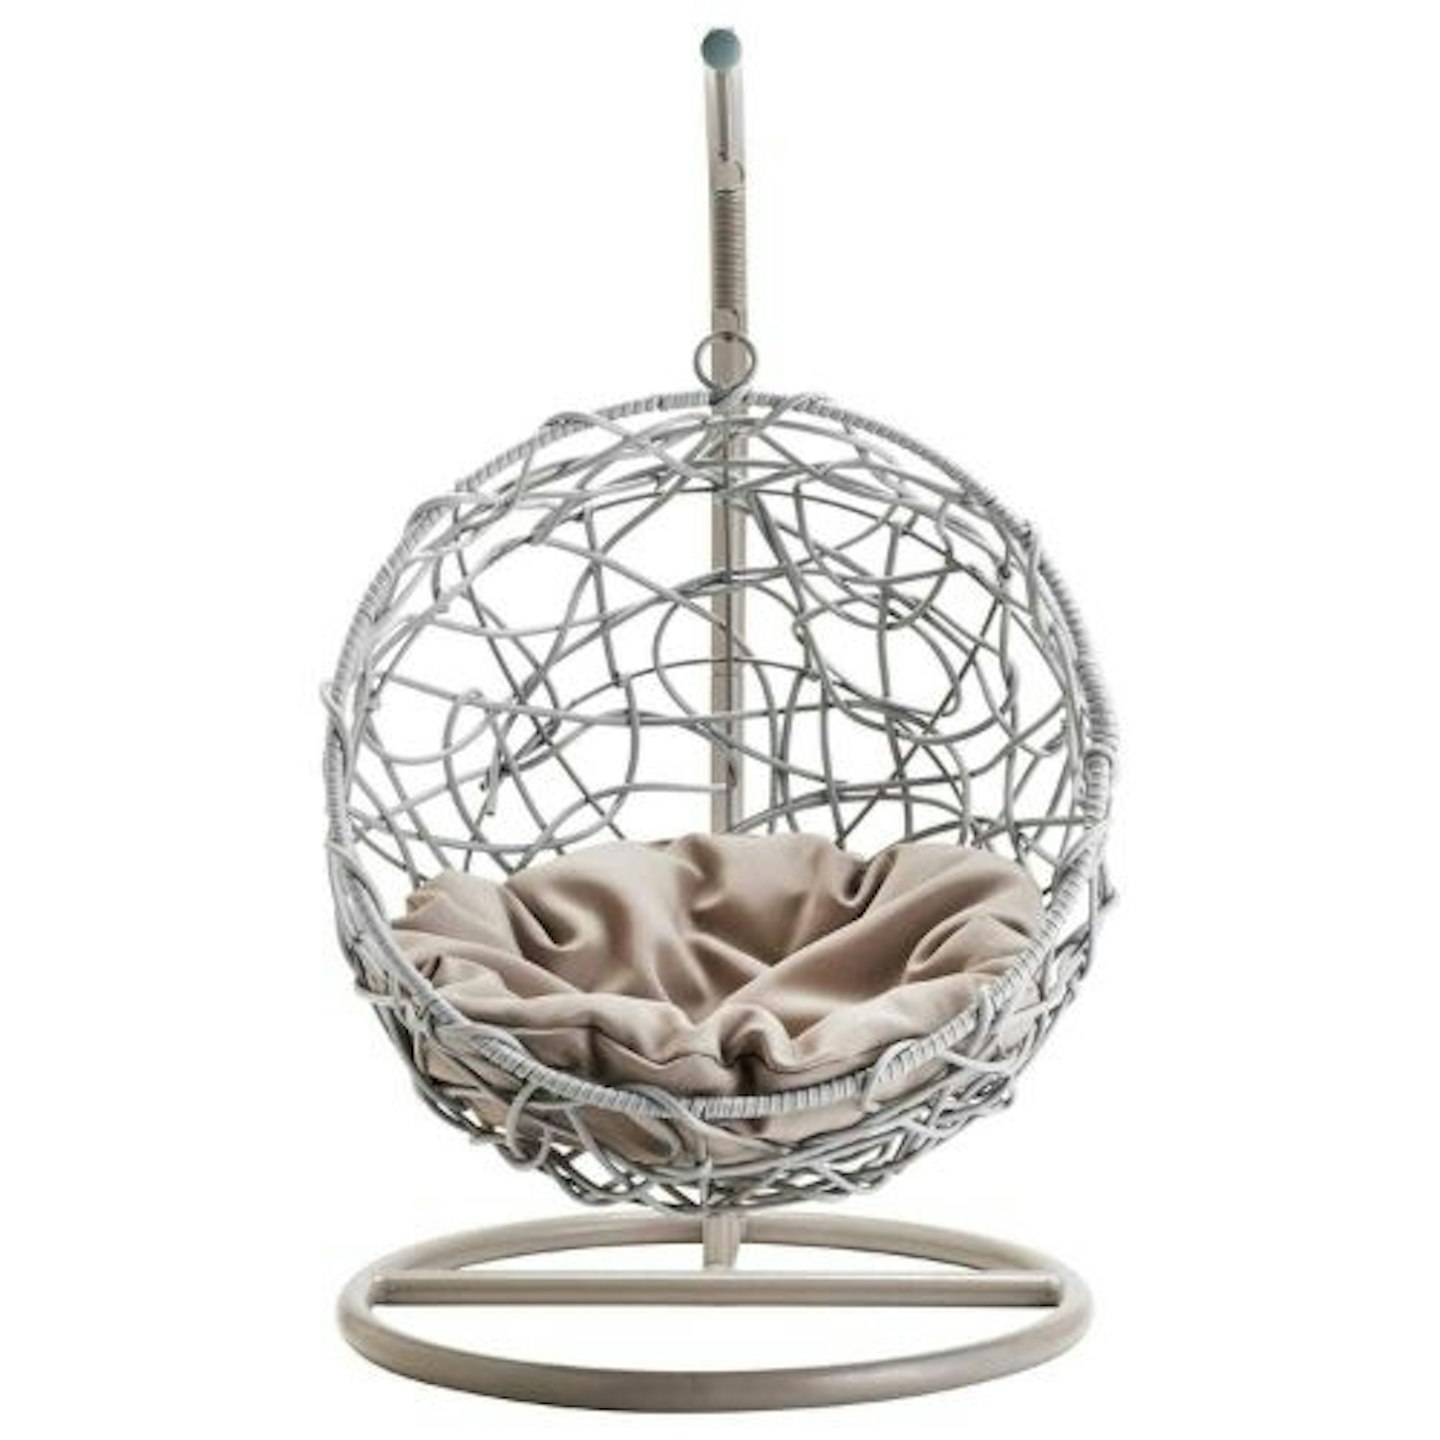 Rattan Effect Pets Hanging Egg Chair Pets Bed Garden Furniture Indoor/Outdoor